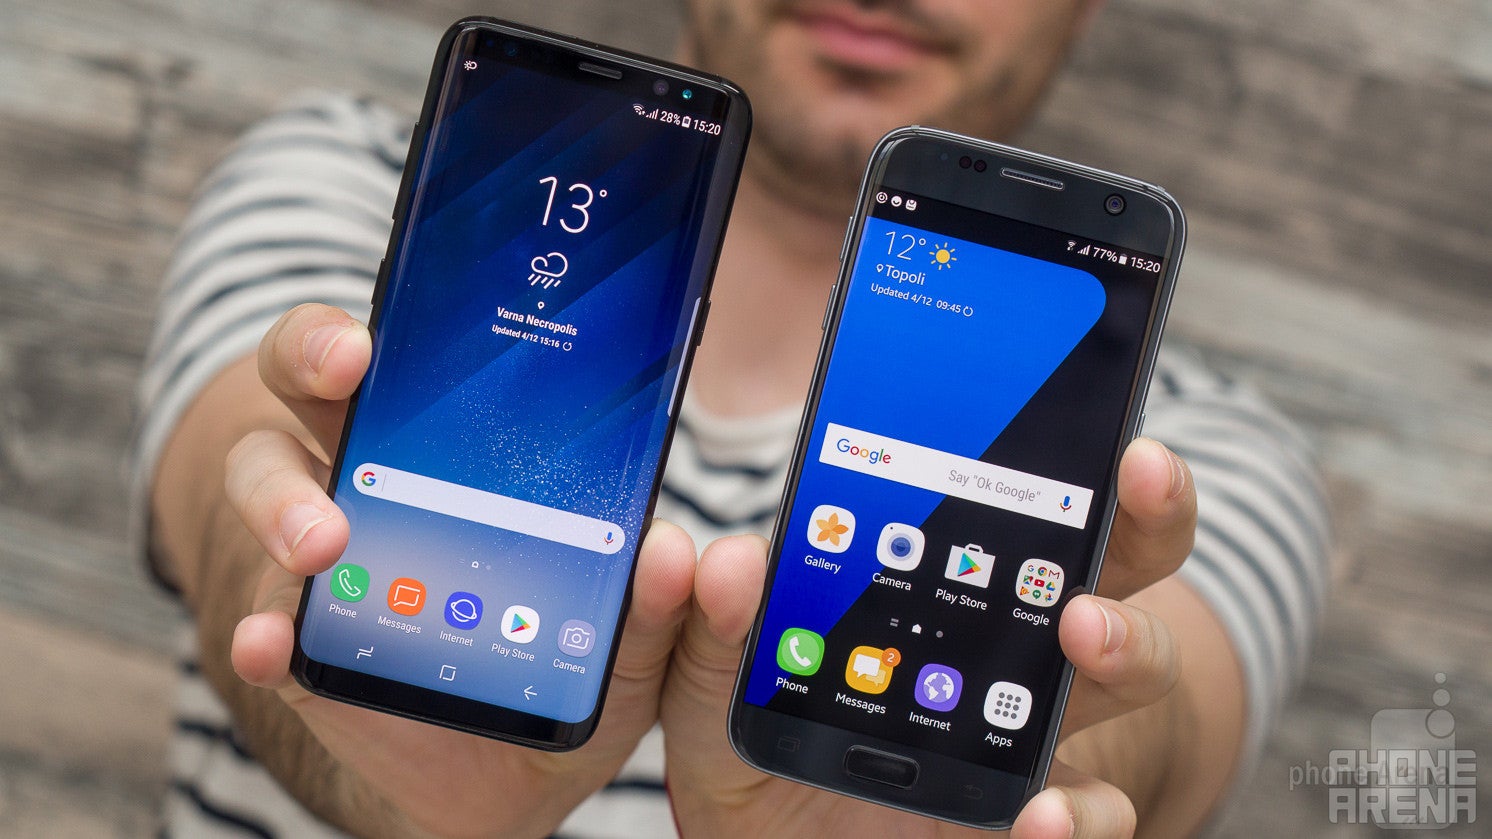 Samsung Galaxy S8 vs Galaxy S7